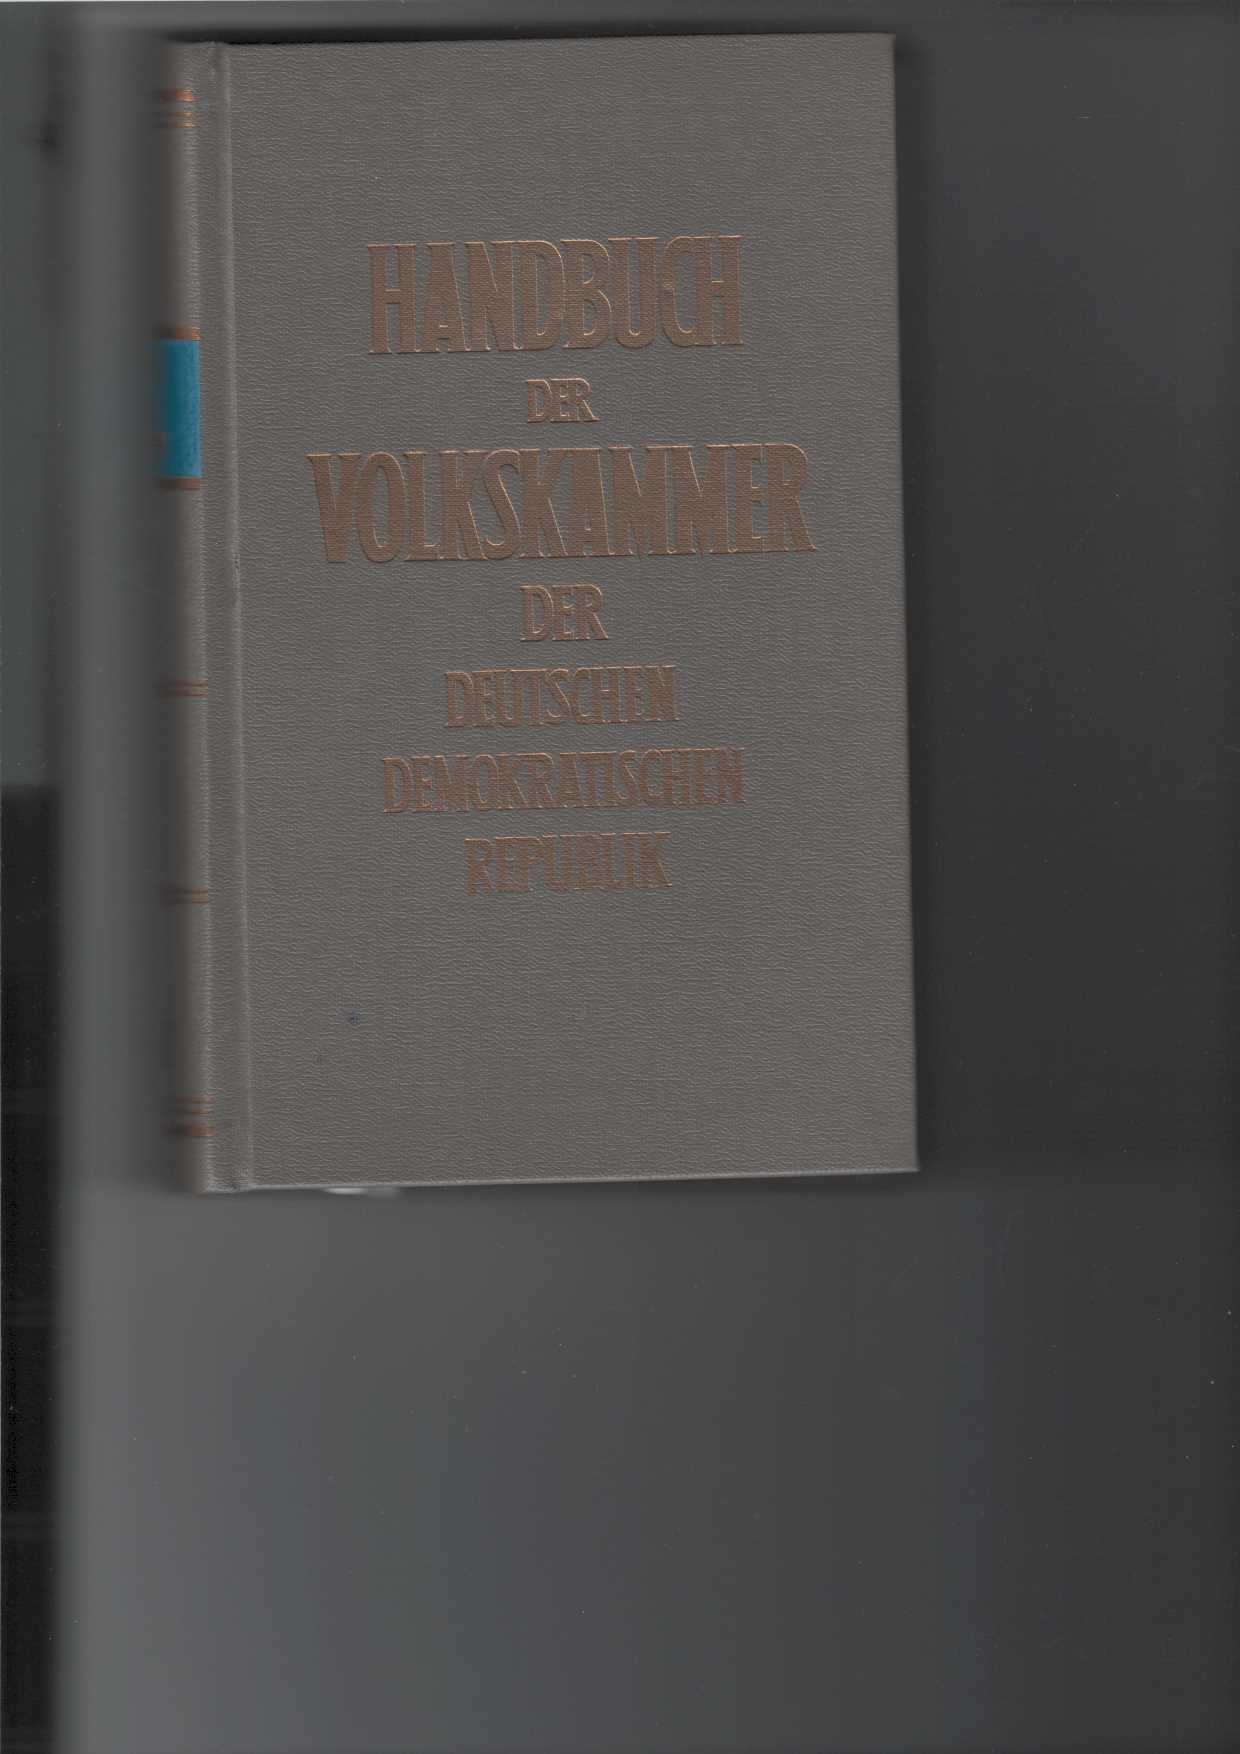 Krger, Herbert und Herbert Thomas:  Handbuch der Volkskammer der Deutschen Demokratischen Republik. 